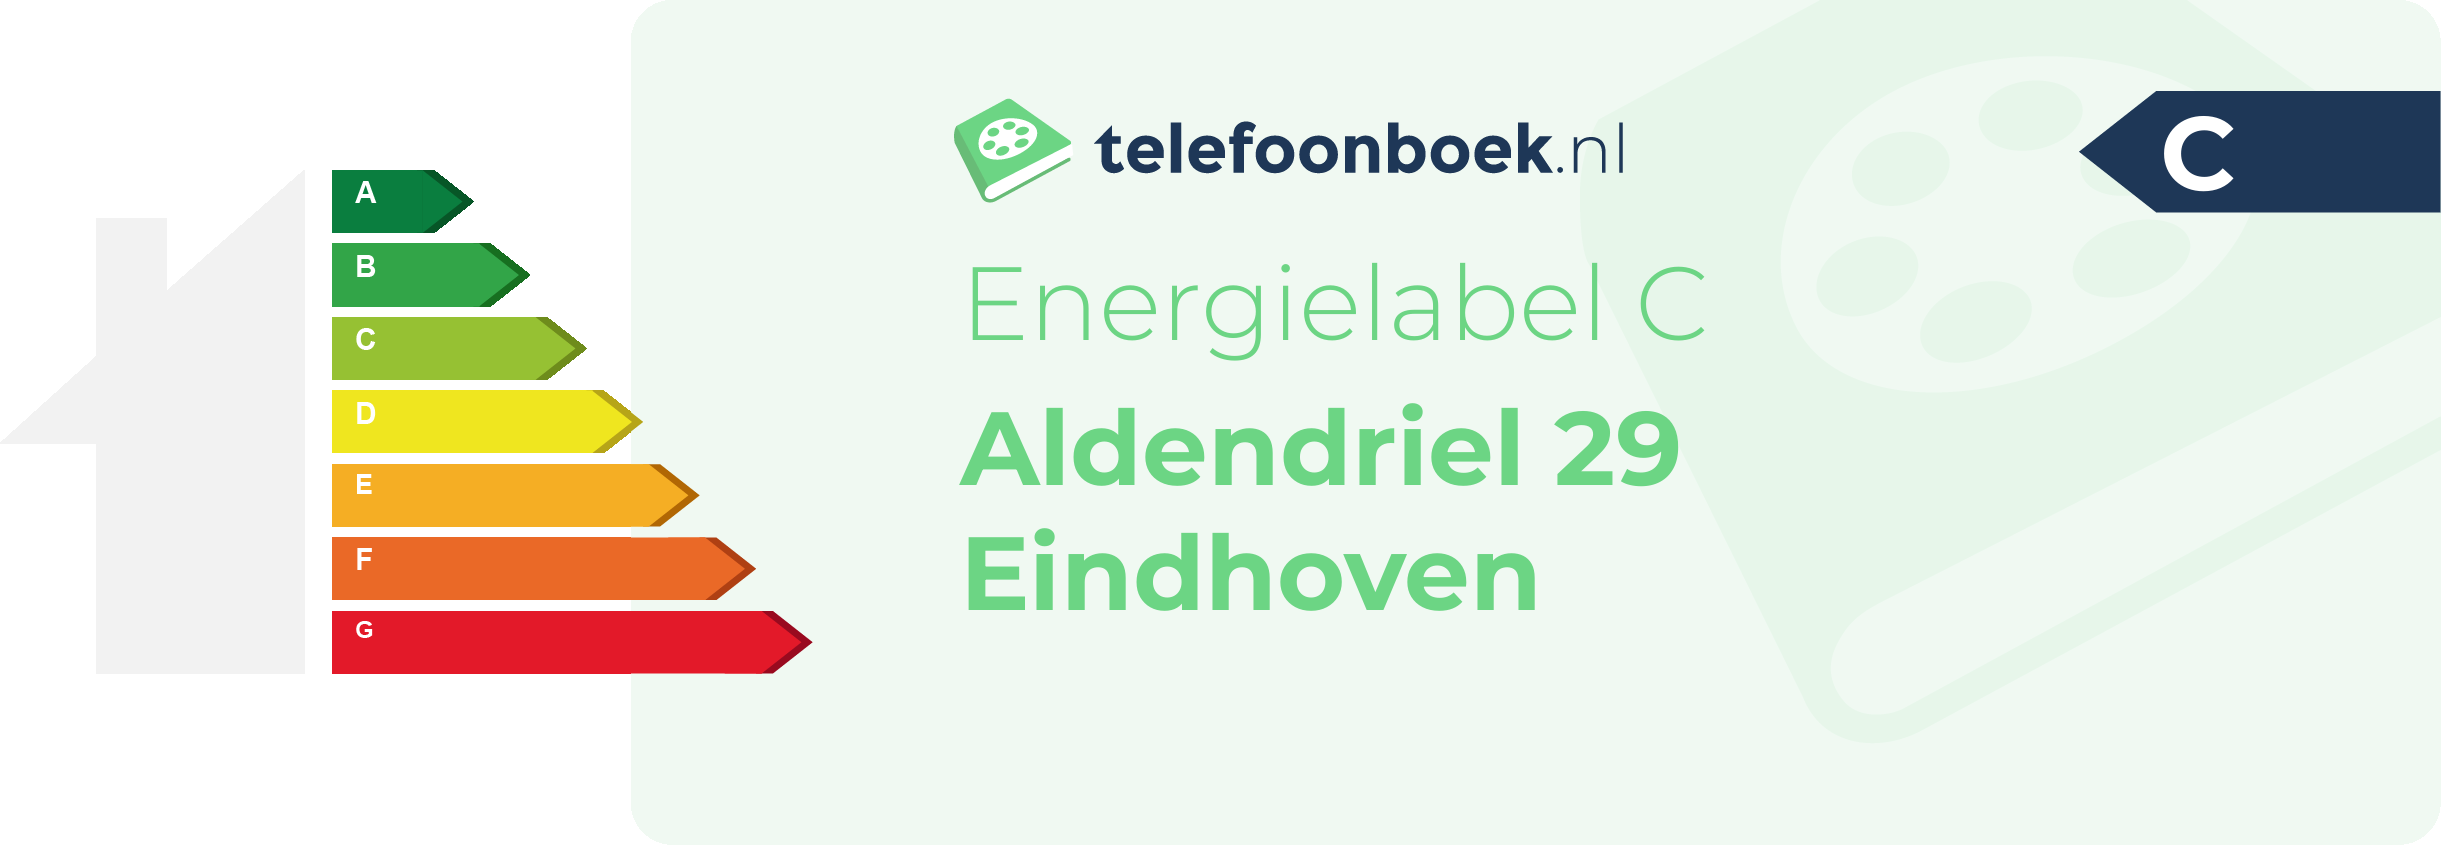 Energielabel Aldendriel 29 Eindhoven